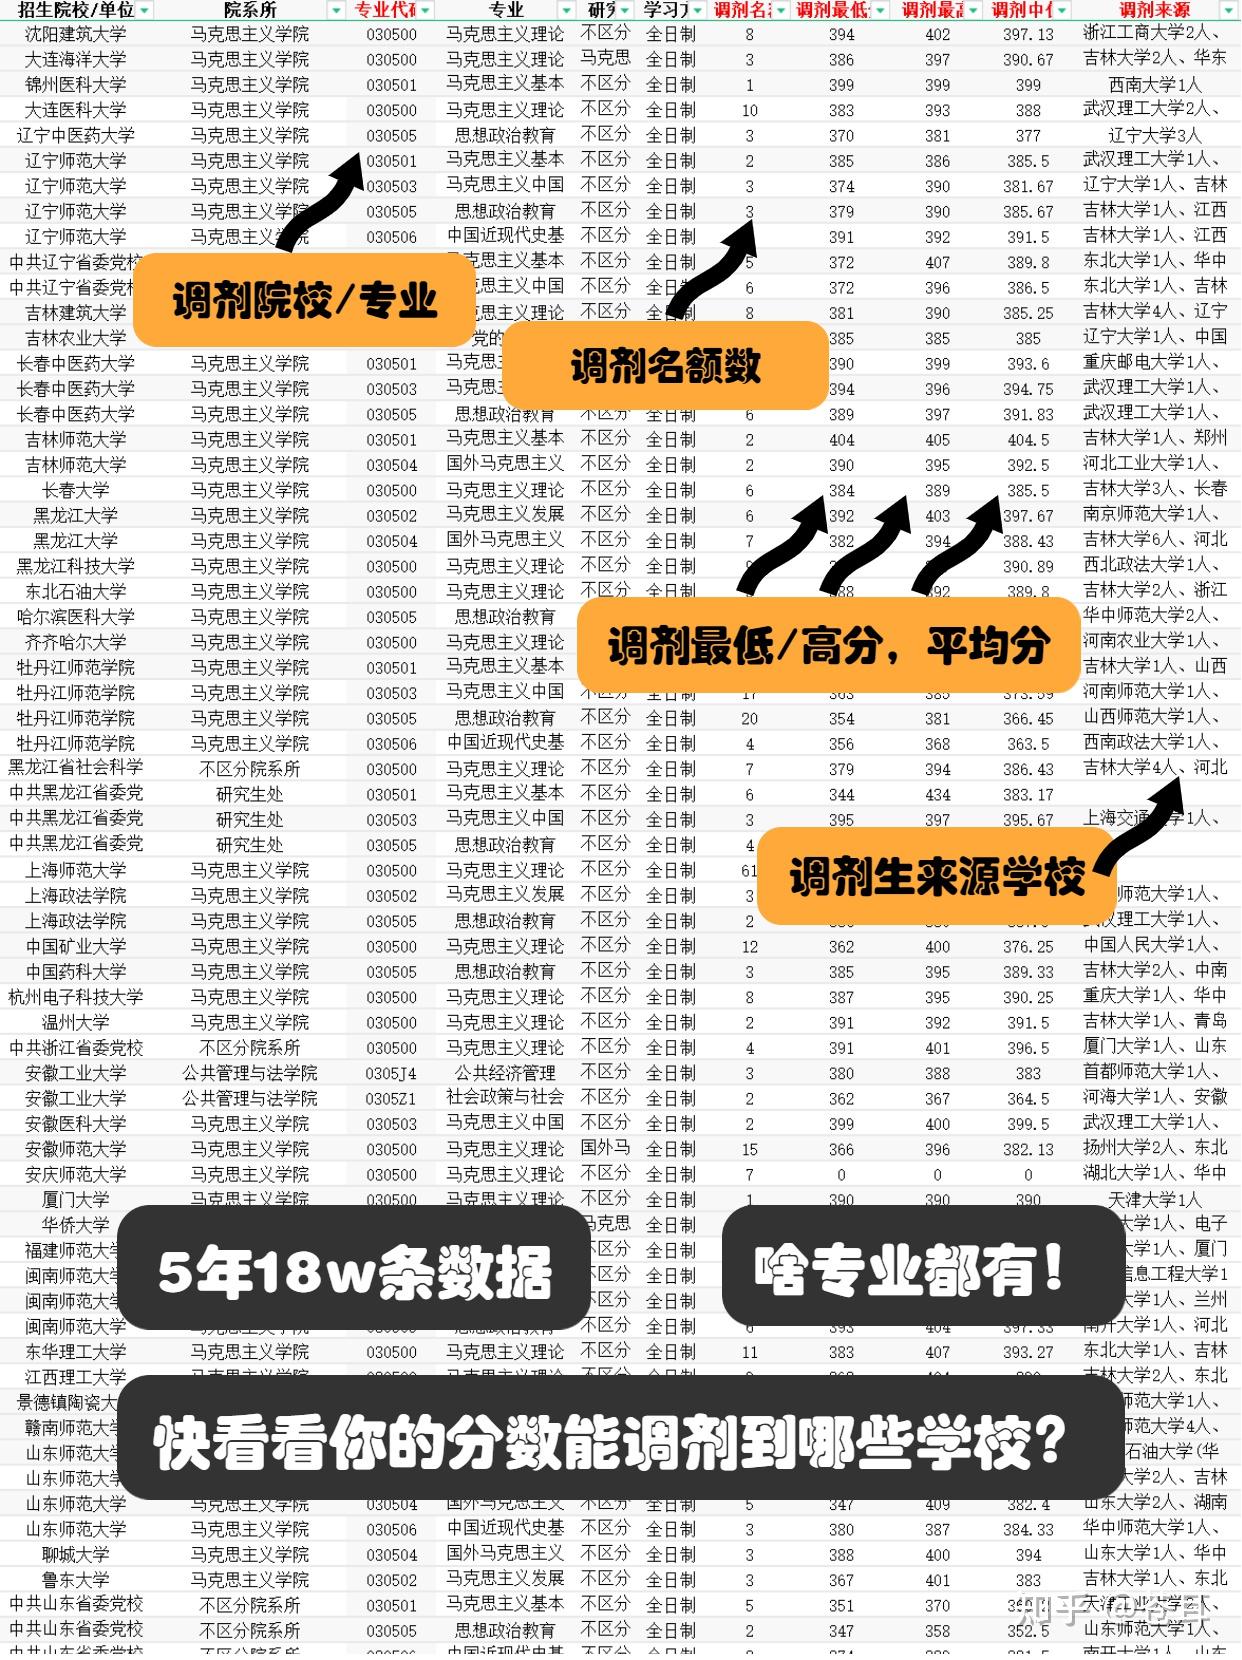 【北京科技大学】考研调剂录取分数 名单 人数等信息（纯干货数据分析） - 知乎